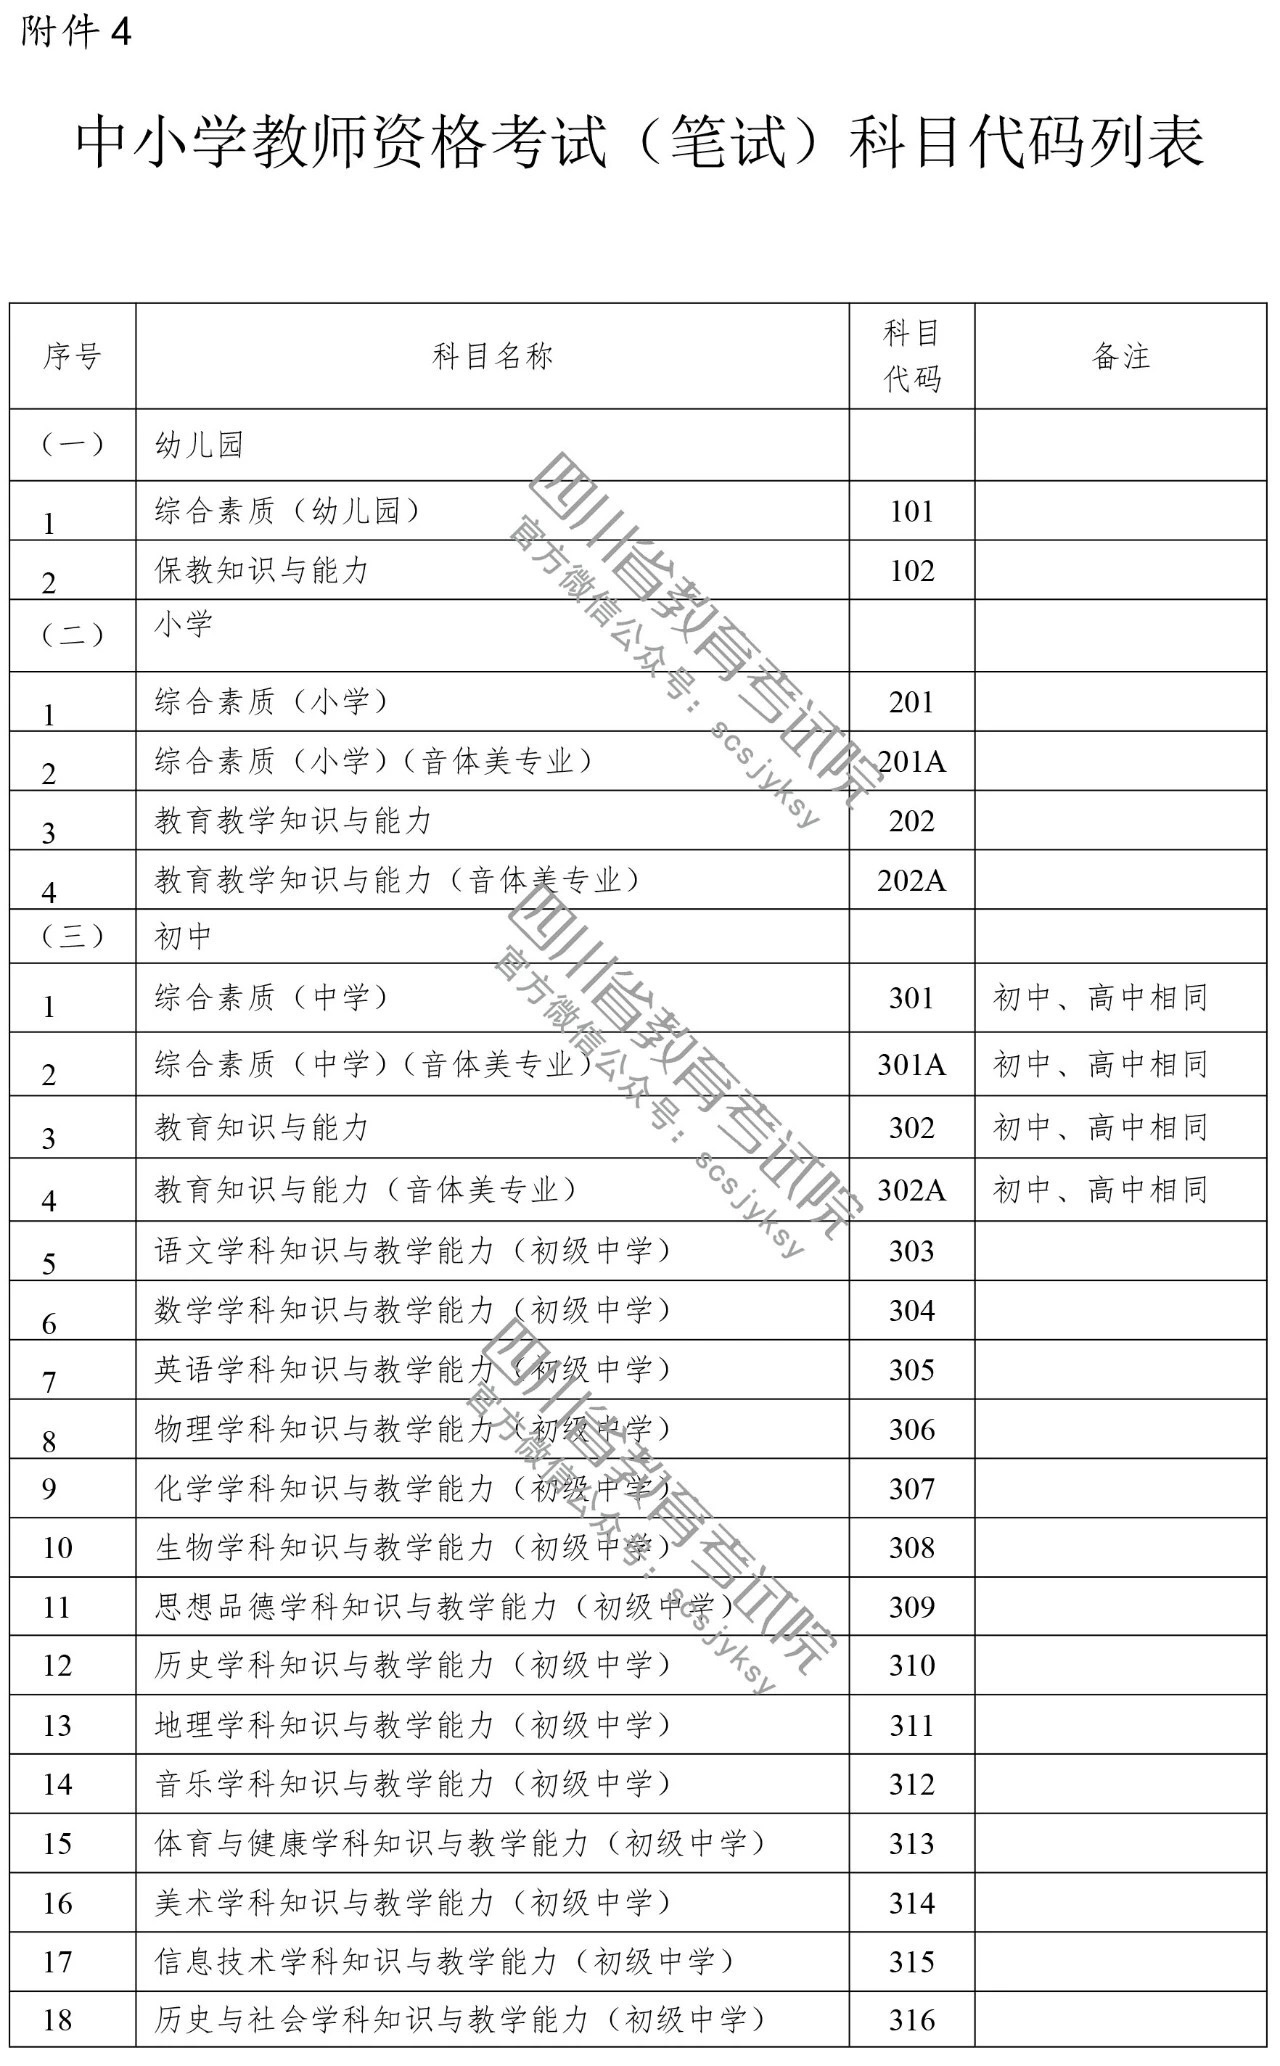 四川省2019年上半年中小学教师资格考试(笔试